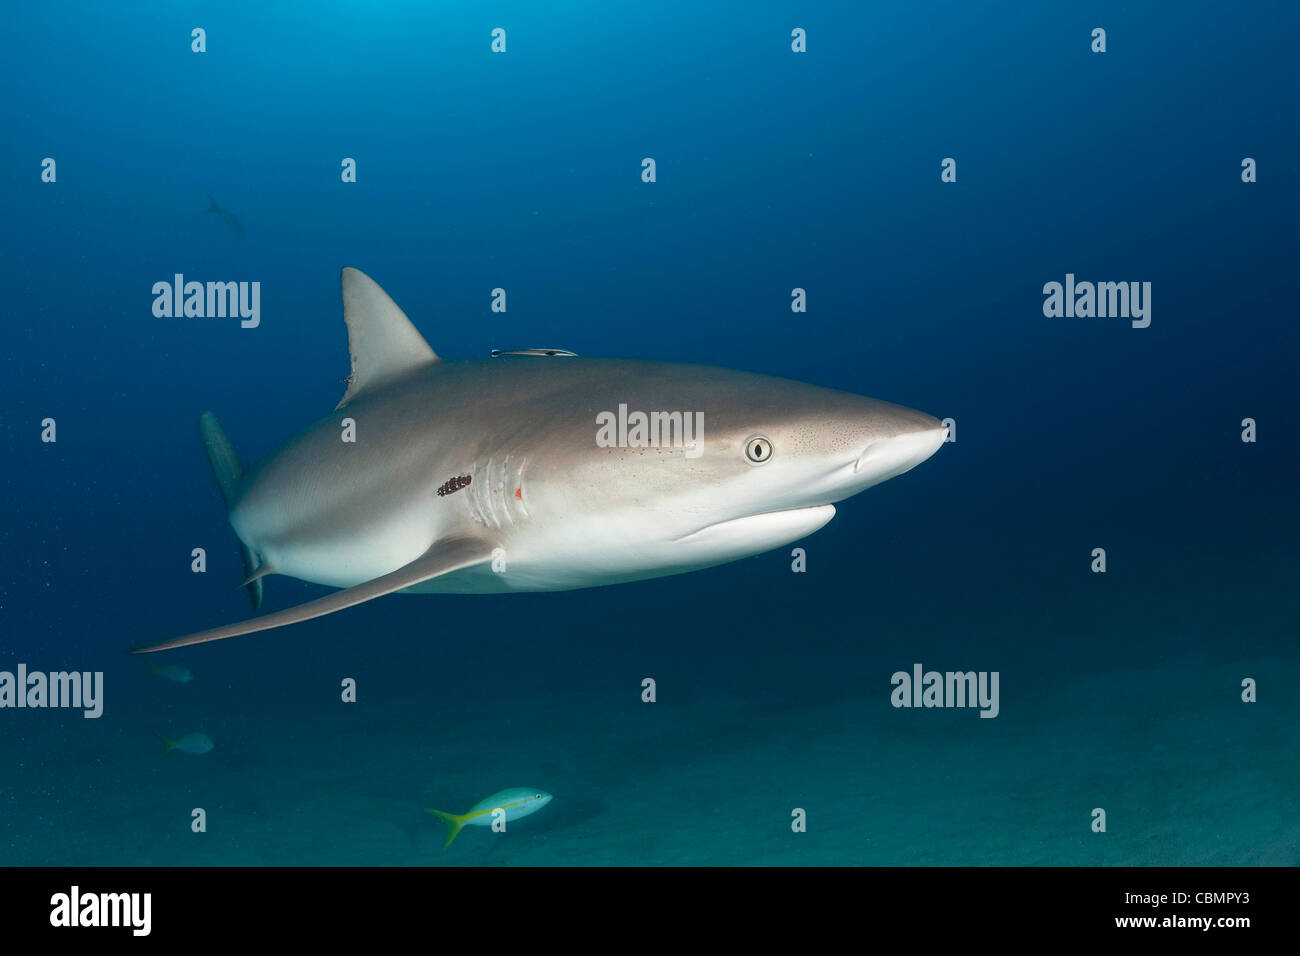 Requin de récif des Caraïbes, Carcharhinus perezi, mer des Caraïbes, Bahamas Banque D'Images